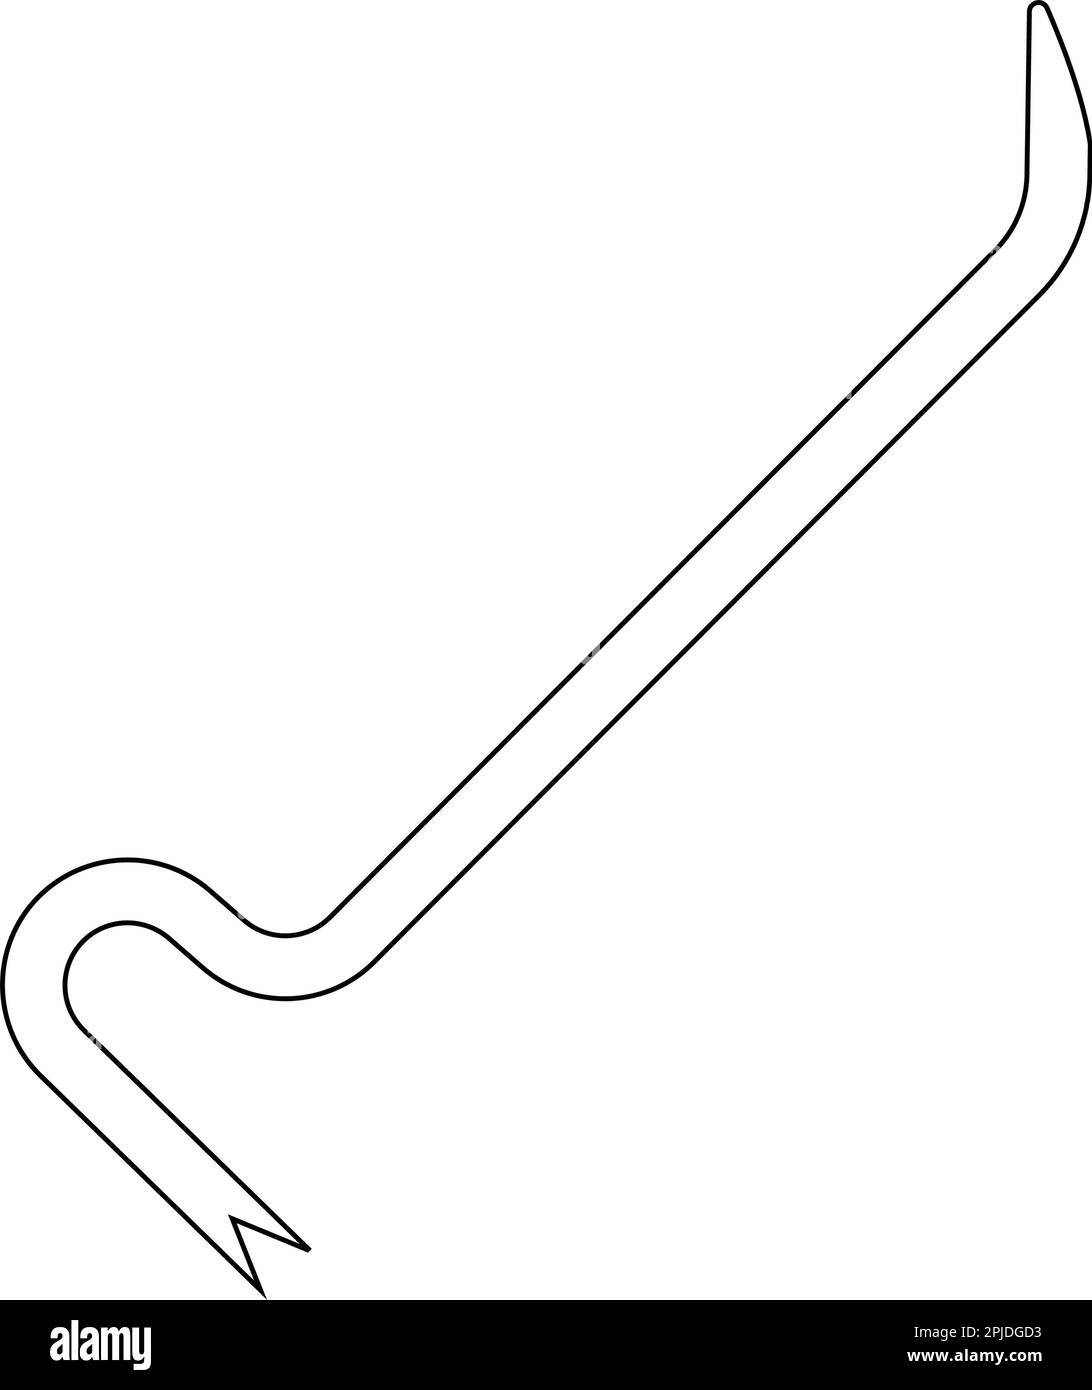 Brecheisen-Symbol. Brecheisen-Symbol-Design aus der Construction Kollektion. Darstellung eines einfachen Elementvektors auf weißem Hintergrund. Stock Vektor